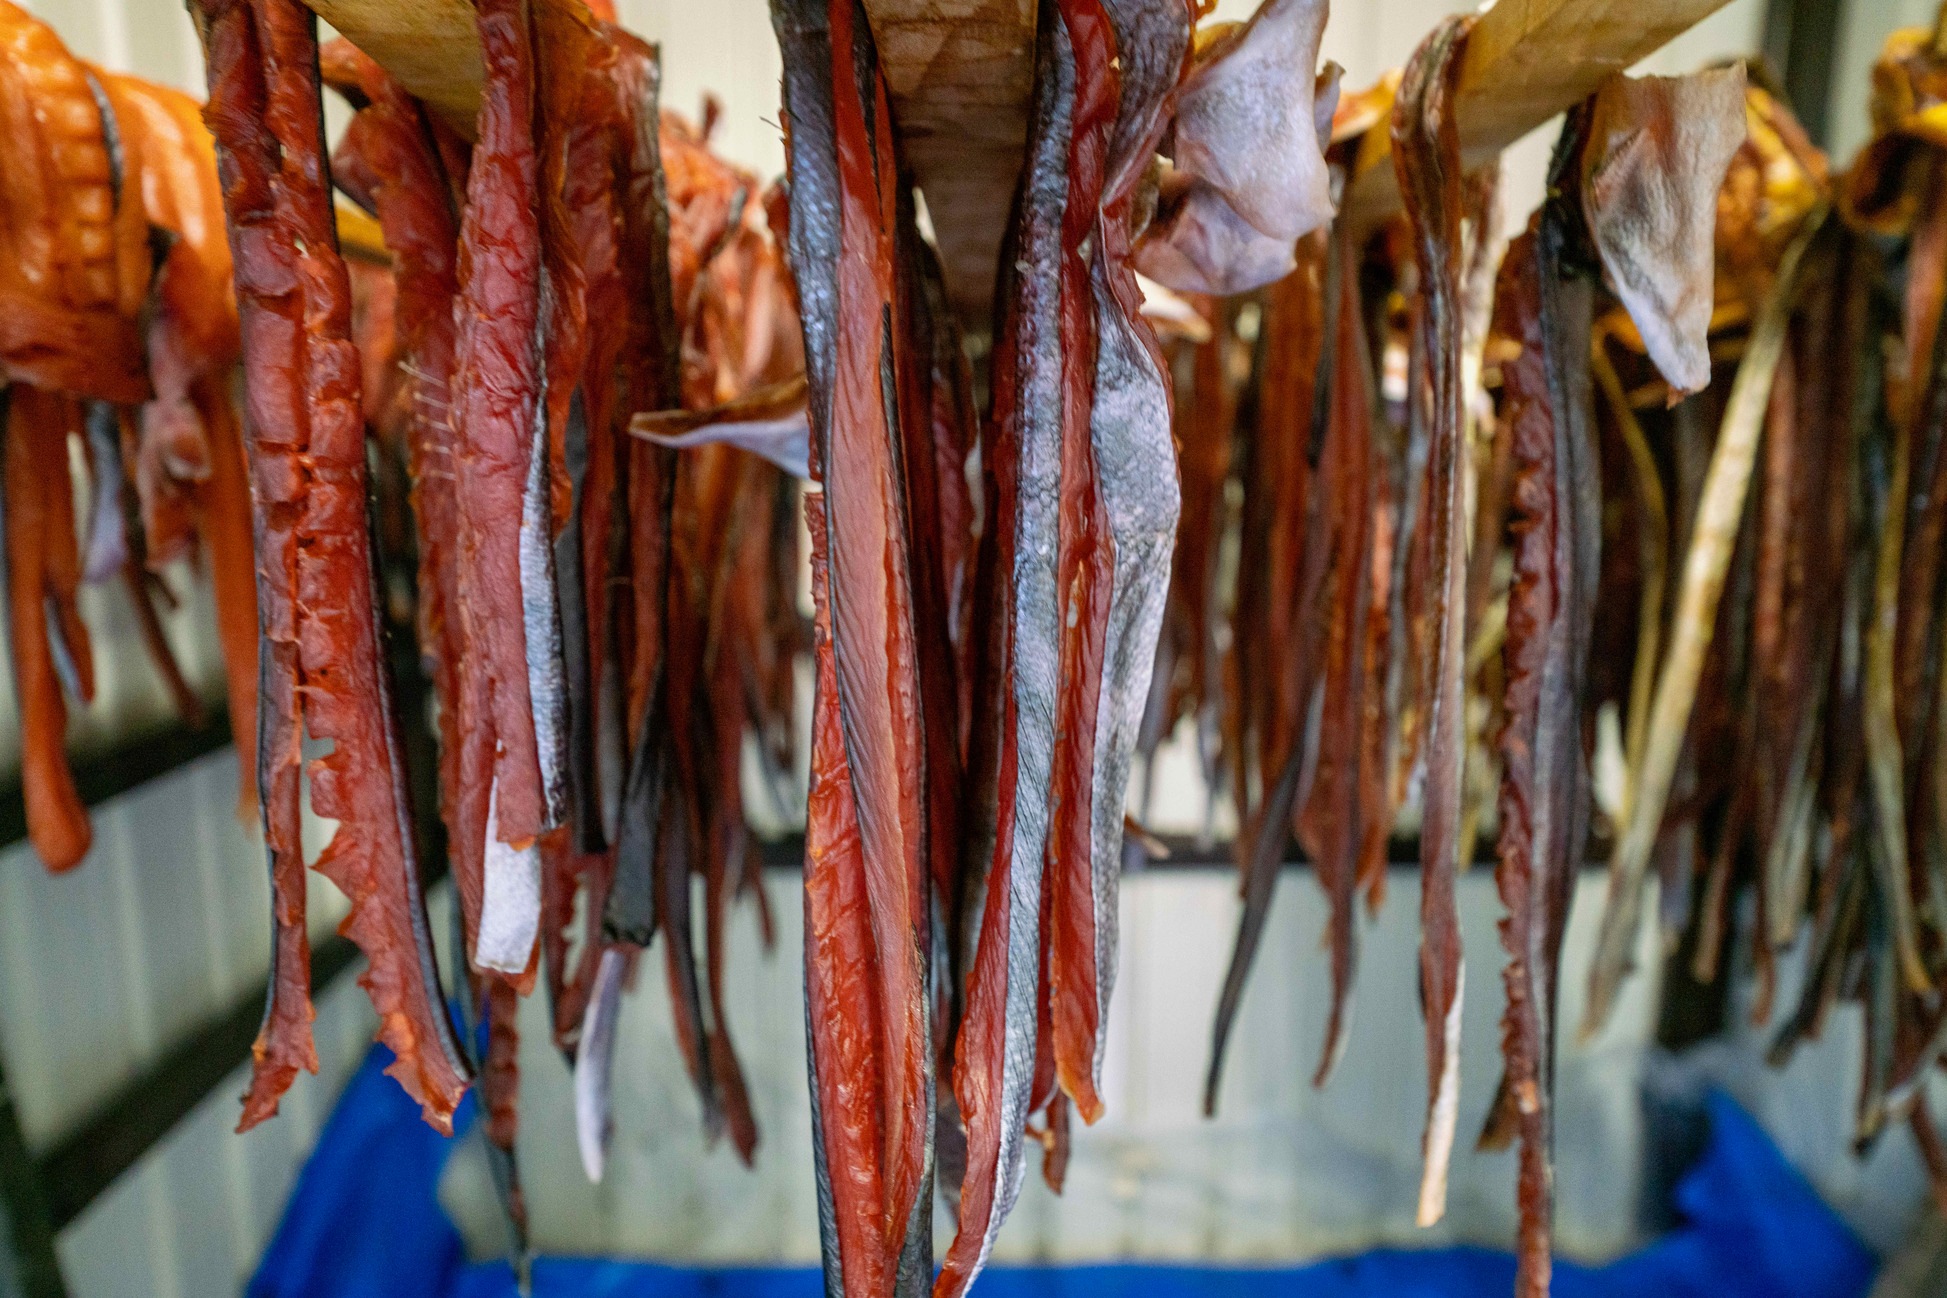 北海道むかわ町の吉村燻製工房の鮭とば,木に吊るして乾燥中の大量の鮭トバ